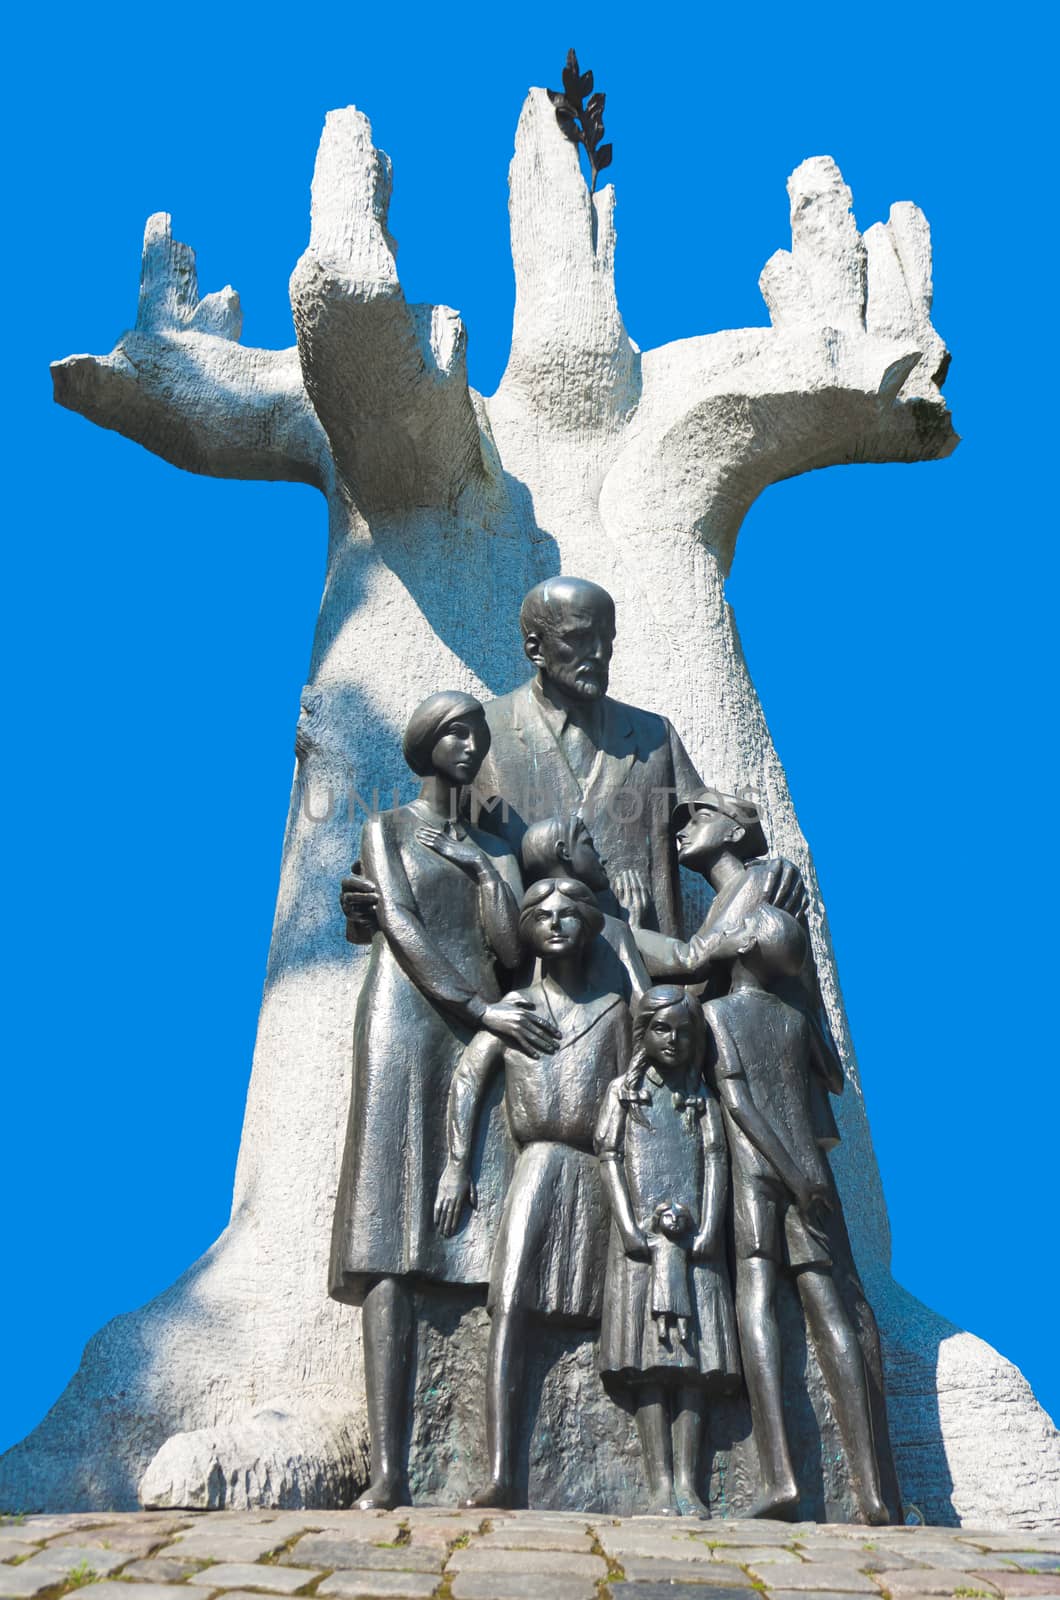 Monument to Janusz Korczak by dario